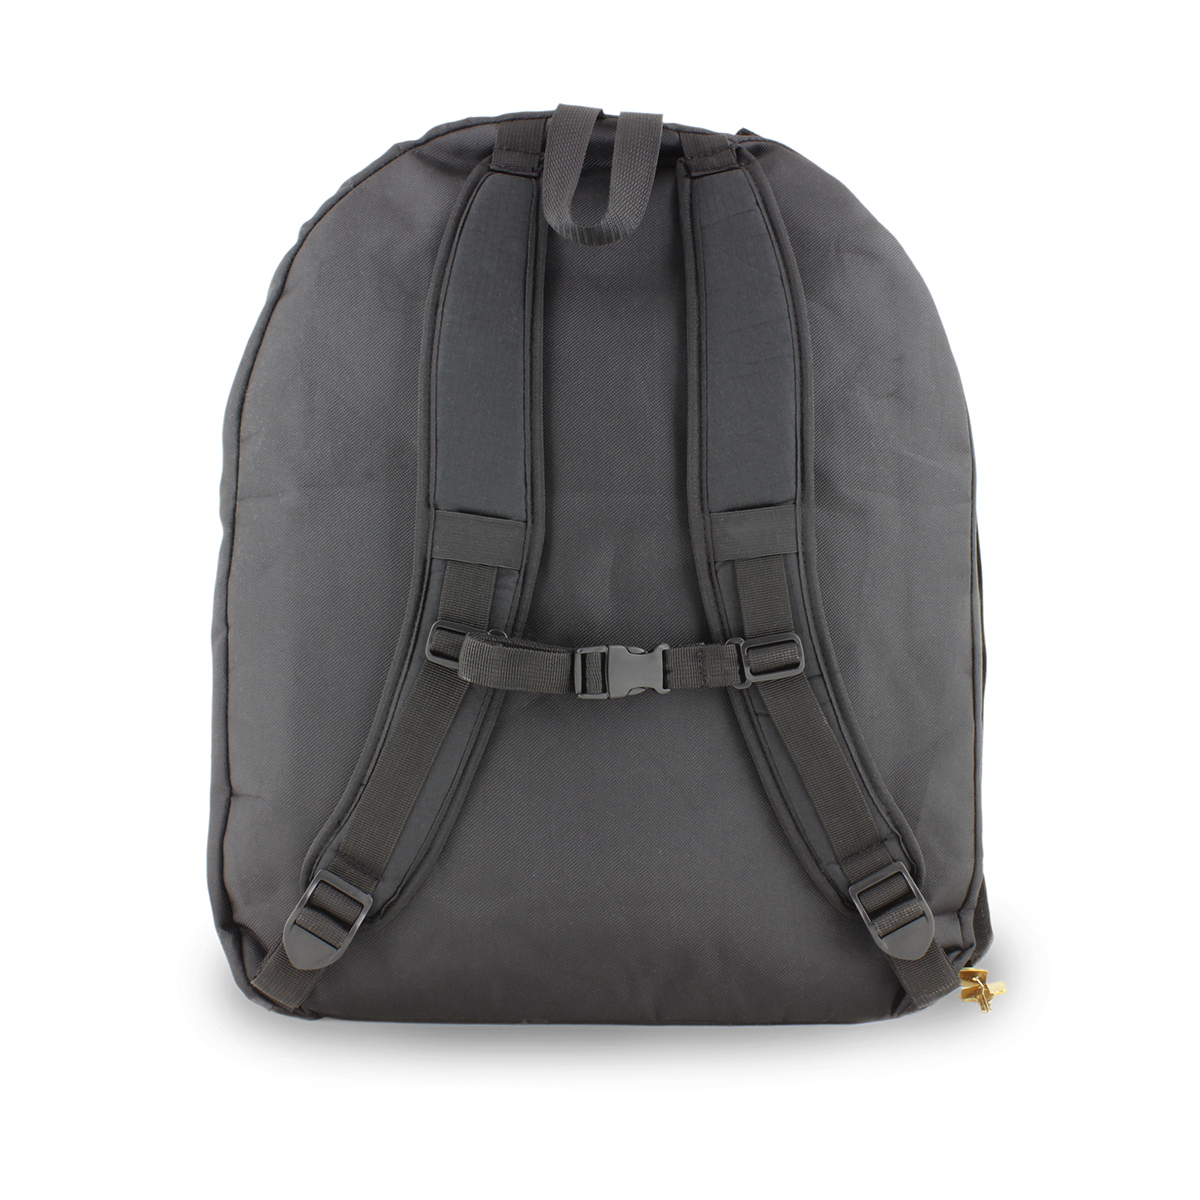 Sleek And Functional Locked Backpacks